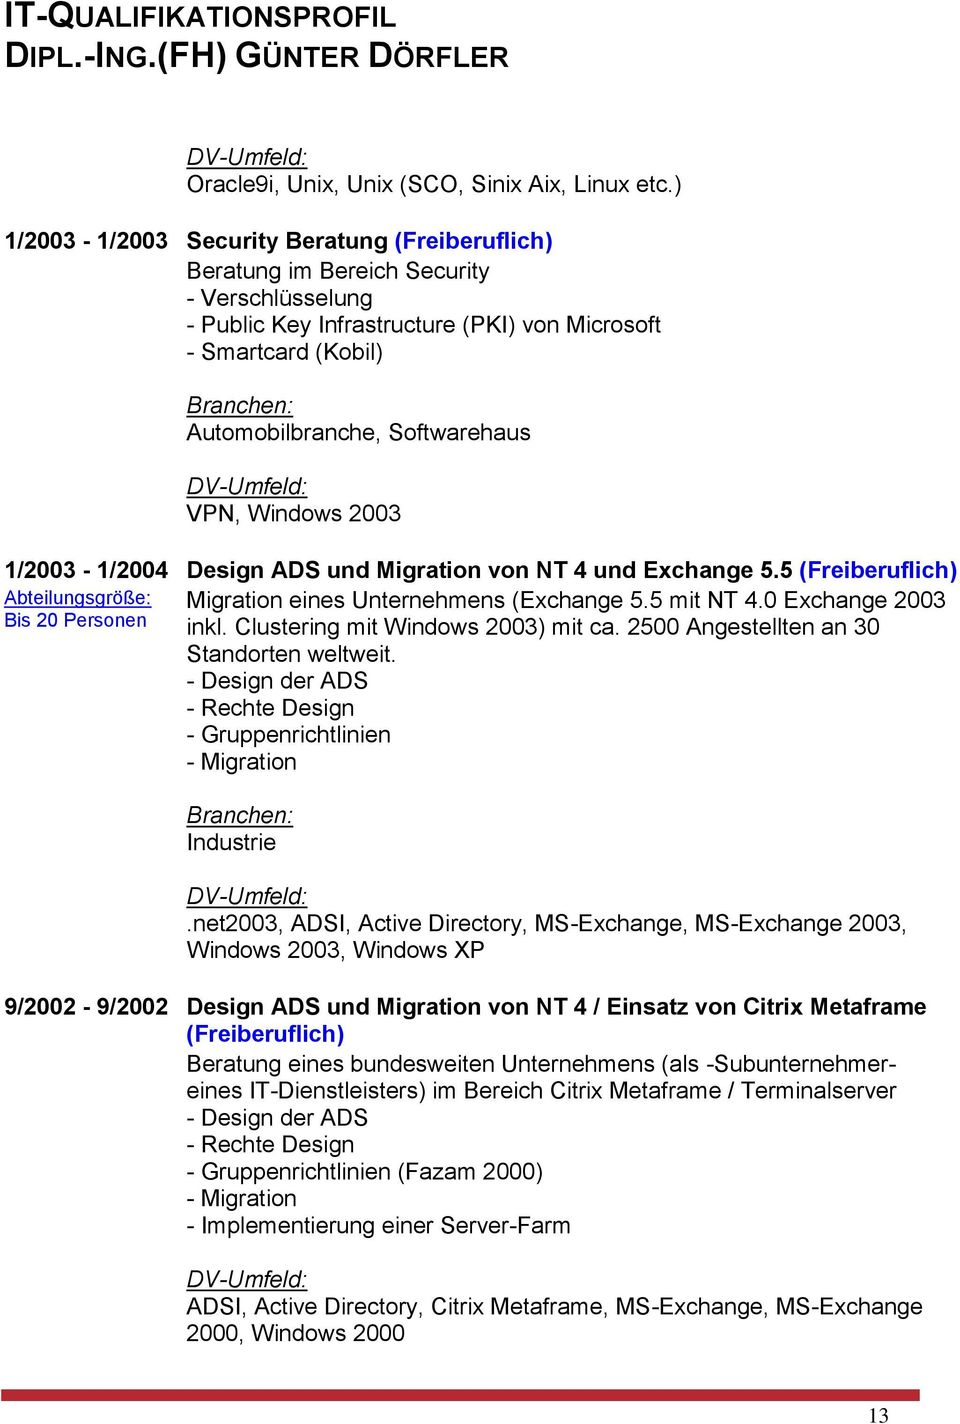 VPN, Windows 2003 1/2003-1/2004 Design ADS und Migration von NT 4 und Exchange 5.5 (Freiberuflich) Abteilungsgröße: Migration eines Unternehmens (Exchange 5.5 mit NT 4.